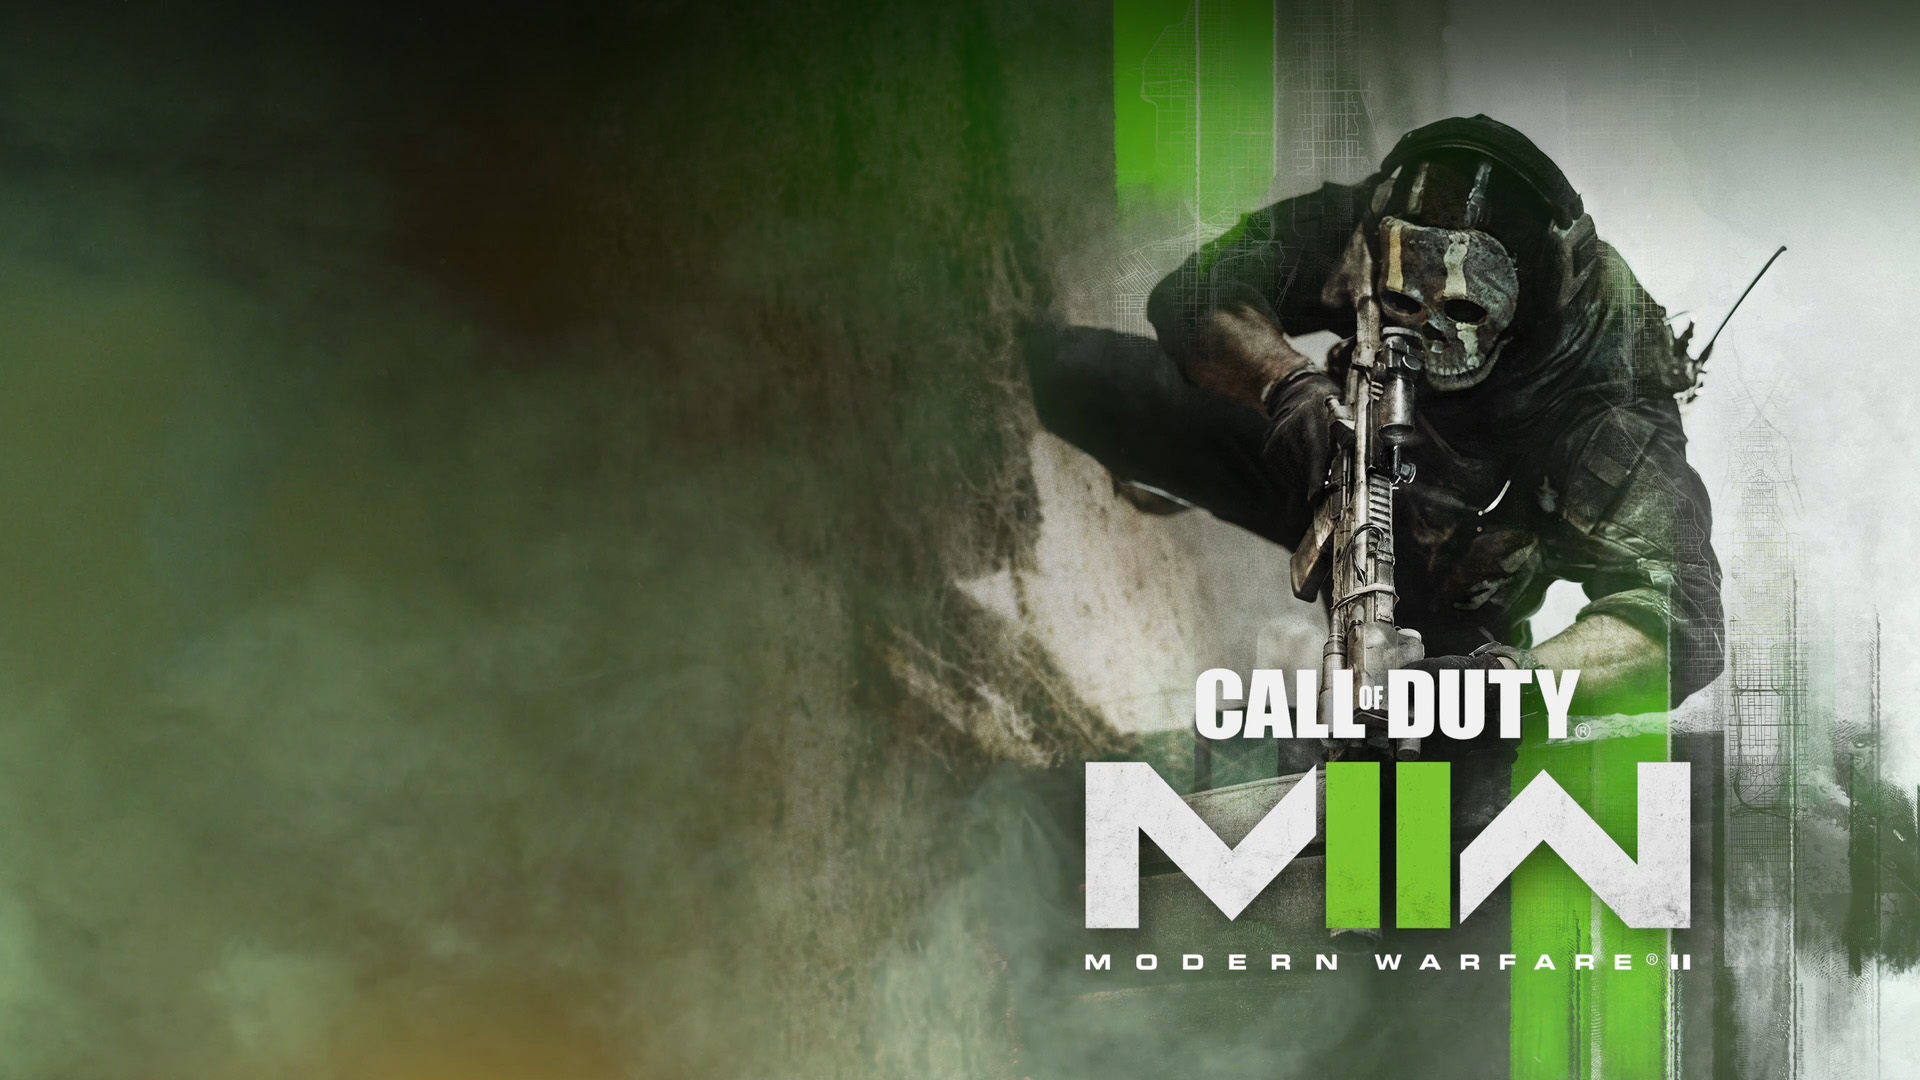 Call of Duty: Modern Warfare II, prikrčený operátor sa pripravuje.